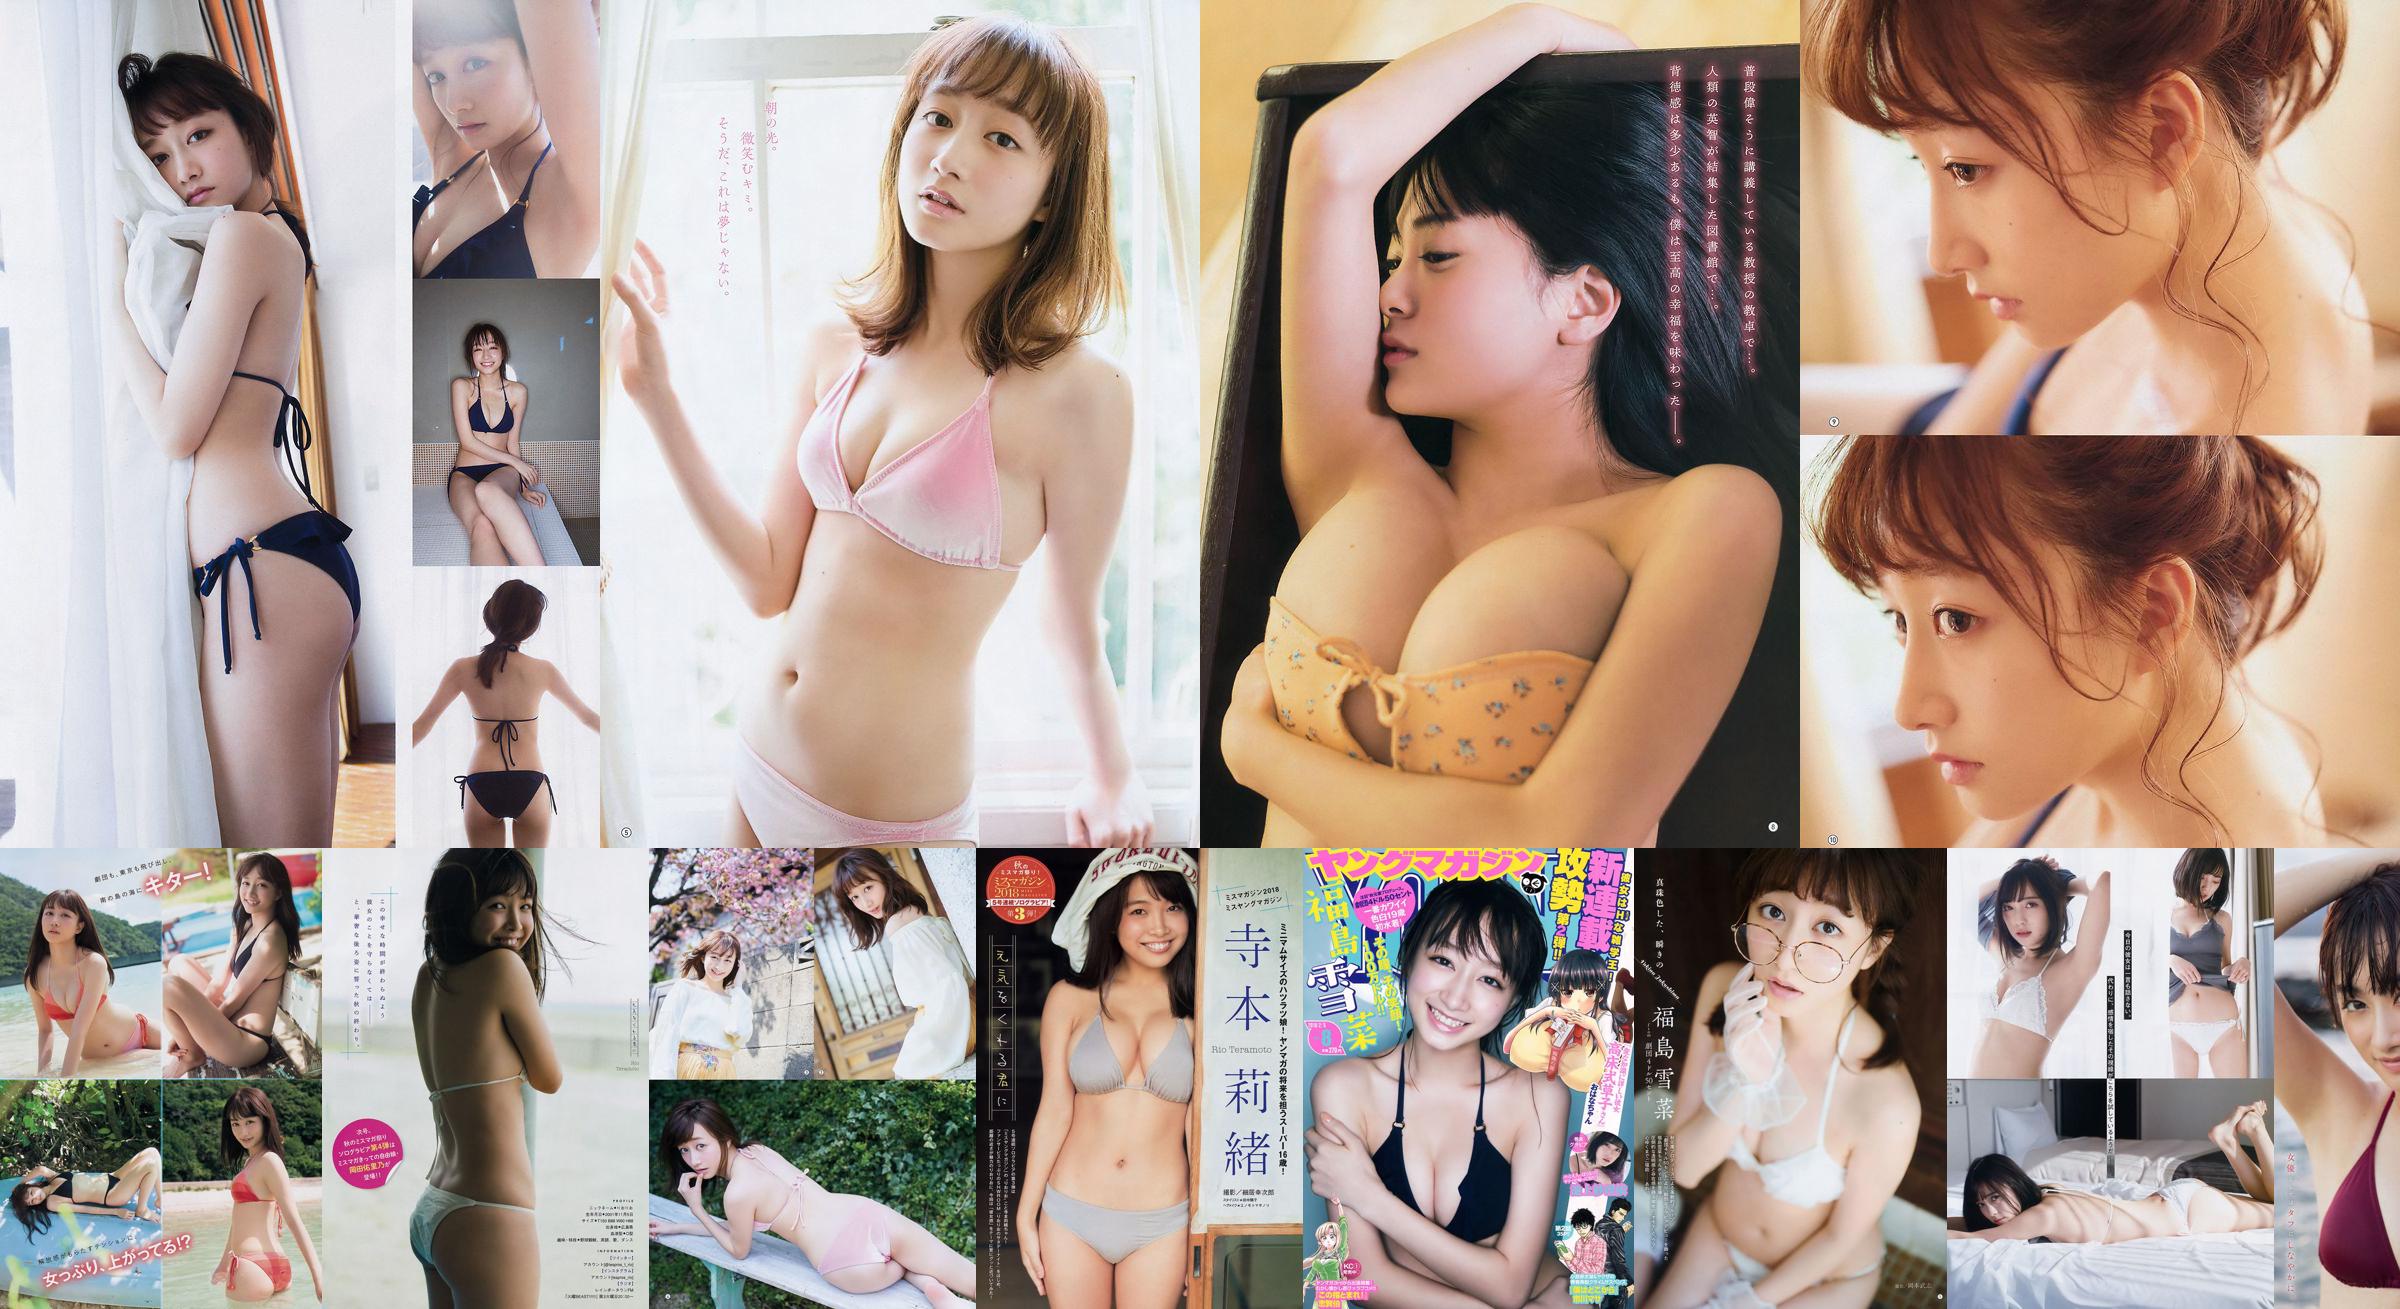 [นิตยสารหนุ่ม] Yukina Fukushima Rio Teramoto 2018 No.50 Photograph No.5489a1 หน้า 1